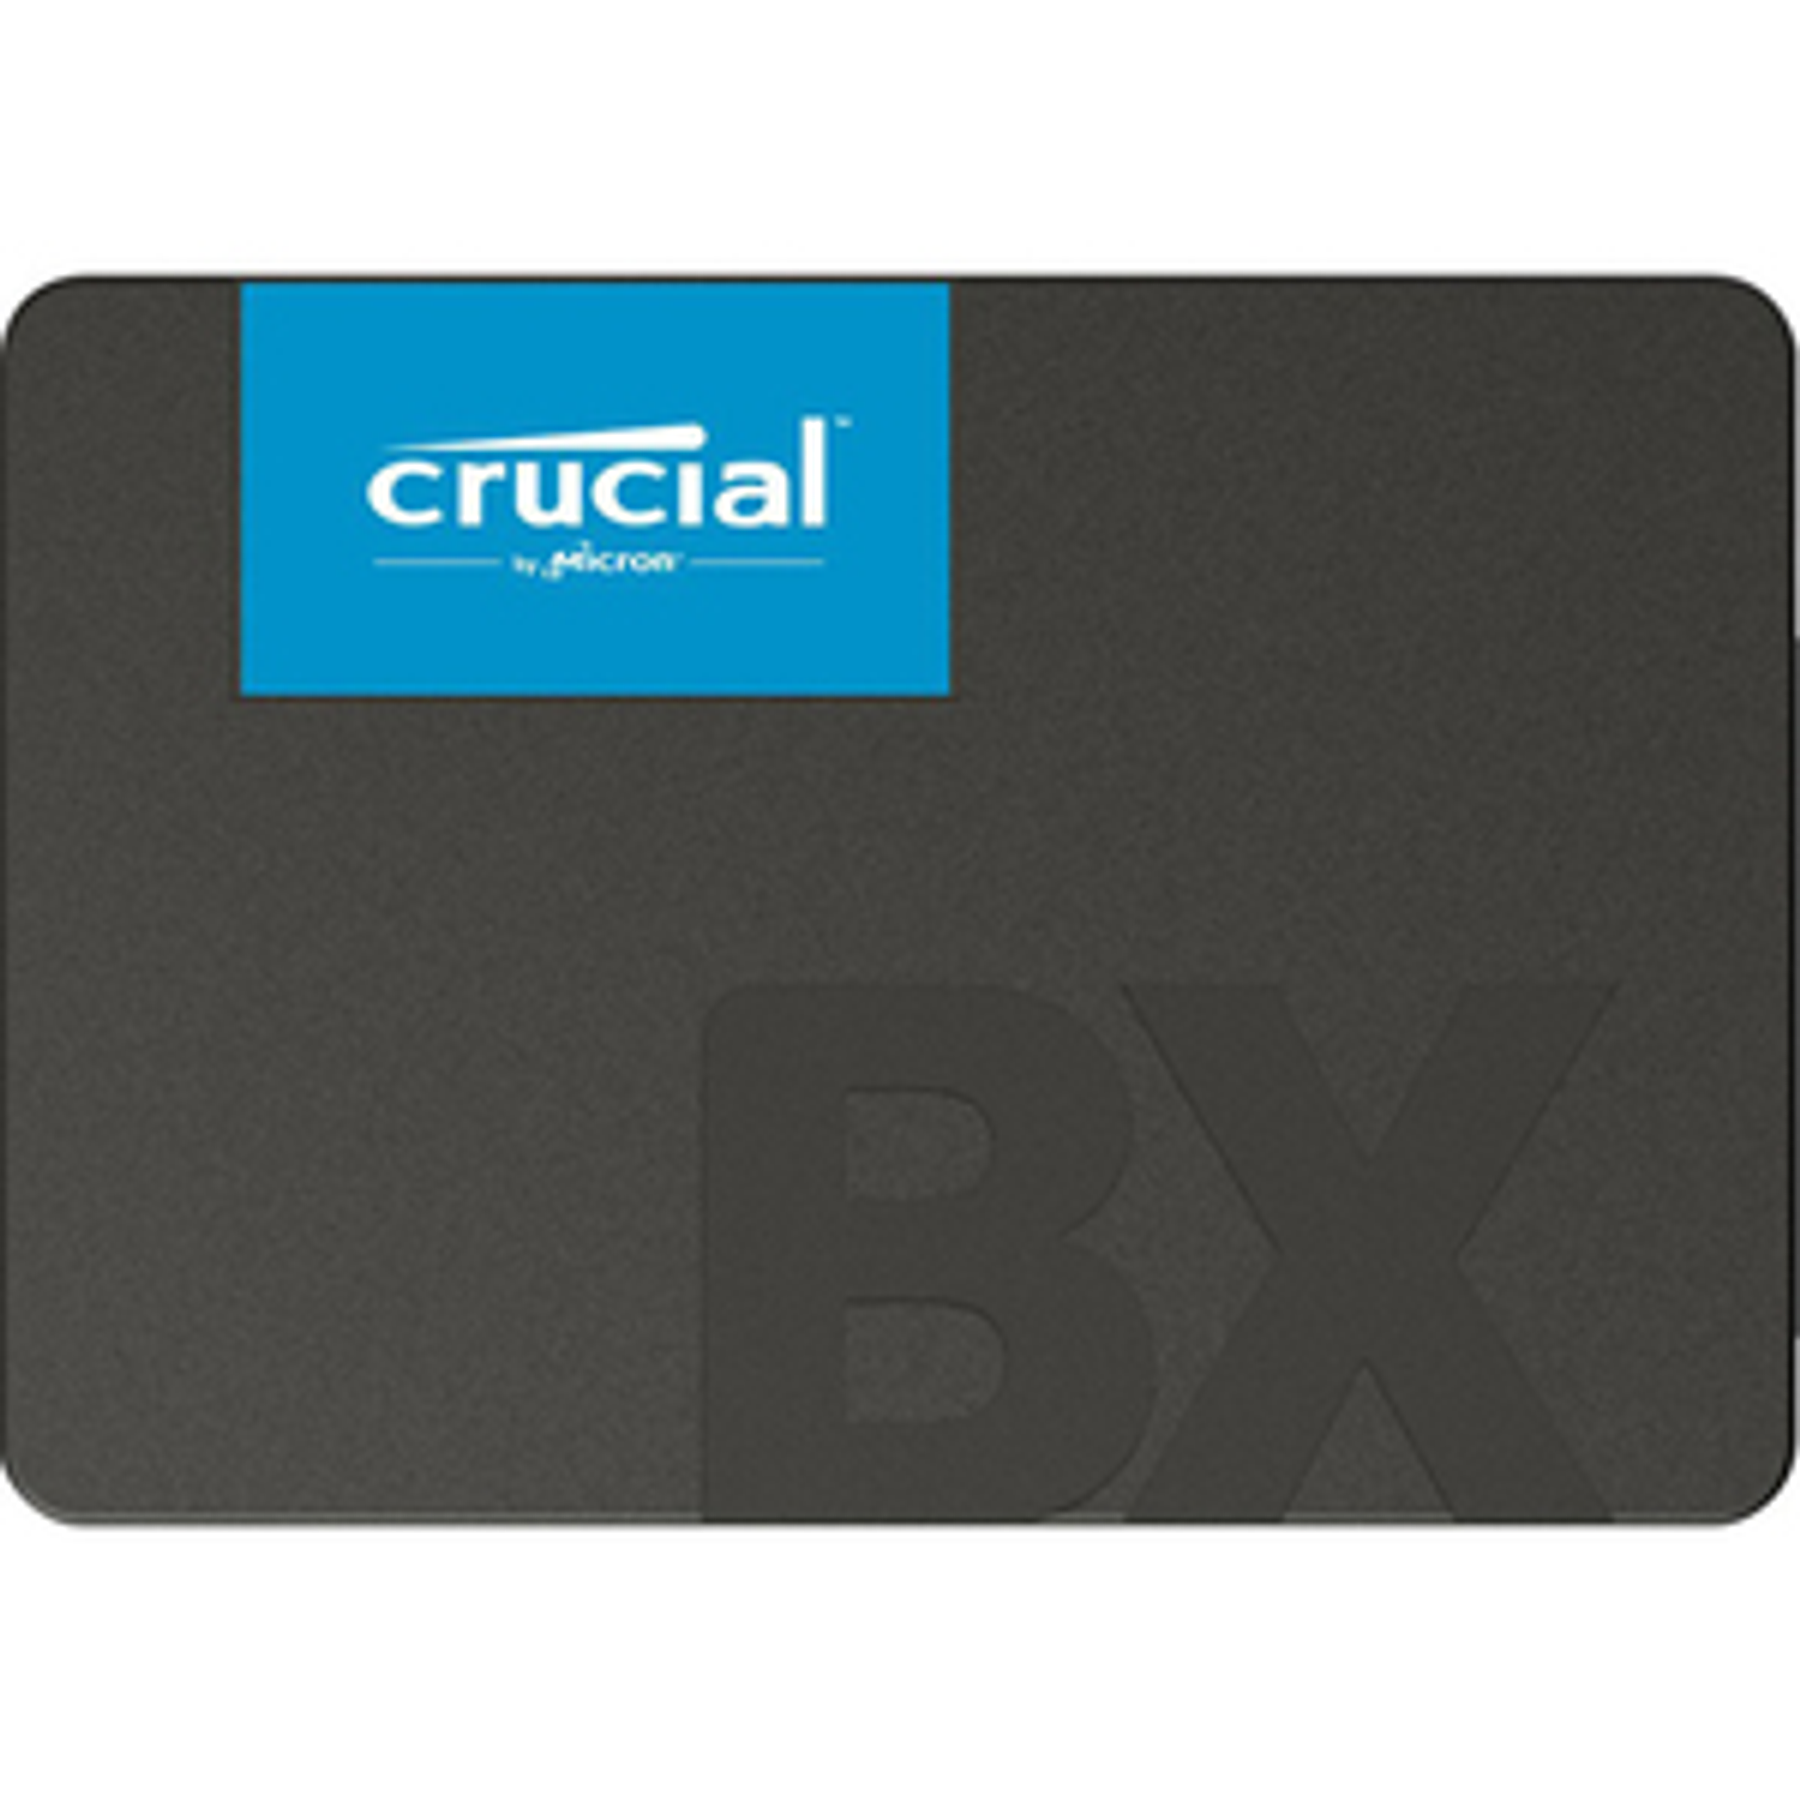 Crucial BX500 120GB 3D NAND SATA 2.5